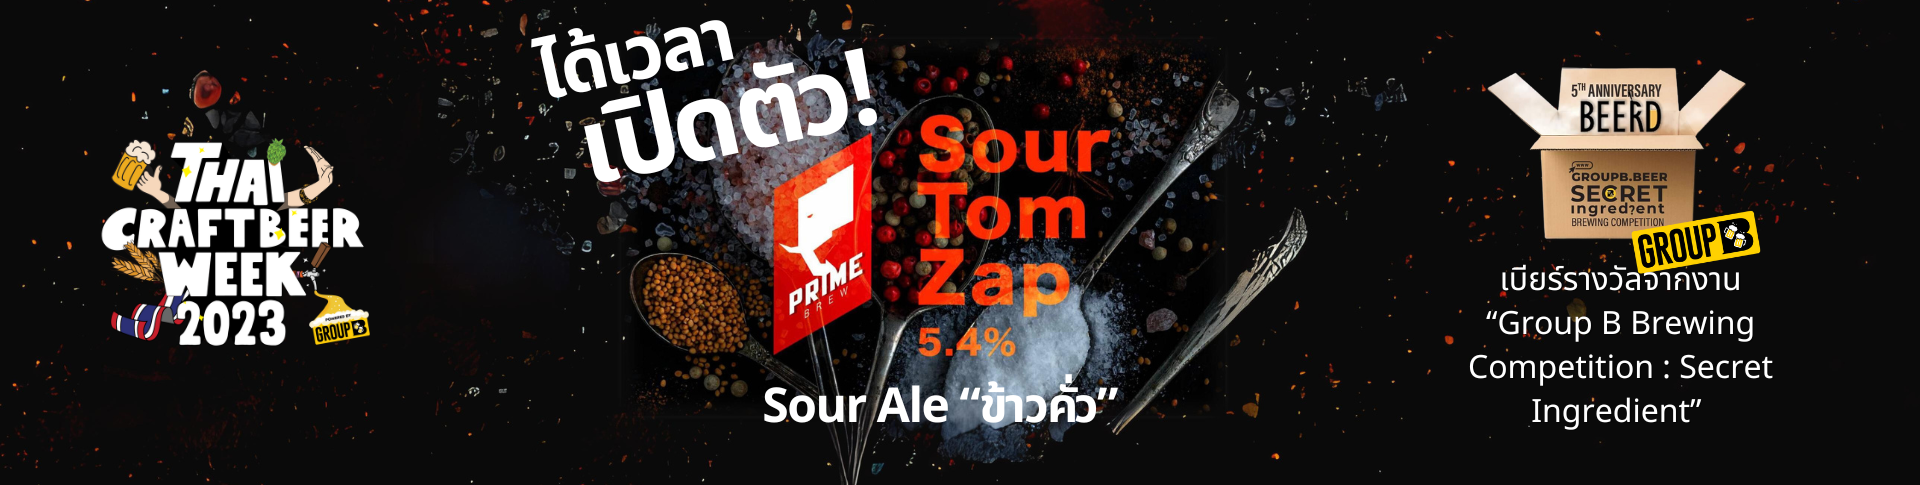 เปิดตัวเบียร์ “SourTom Zap”Sour Ale ข้าวคั่ว @Hops & Hope